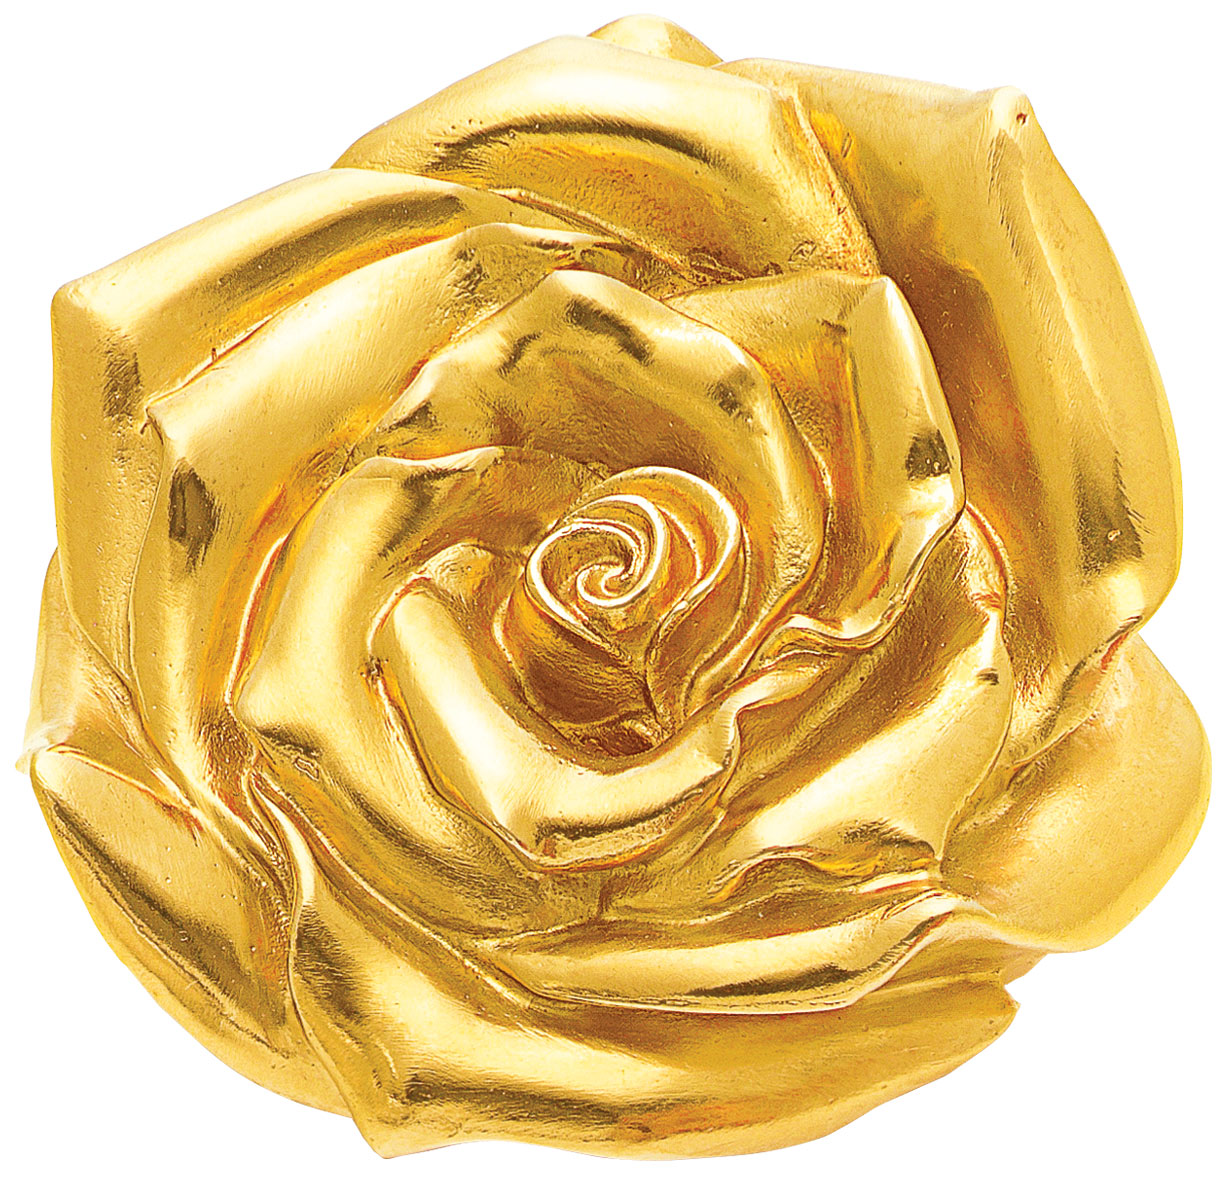 Ottmar Hörl: Skulptur 'Rose' (2012), Version gelbvergoldet